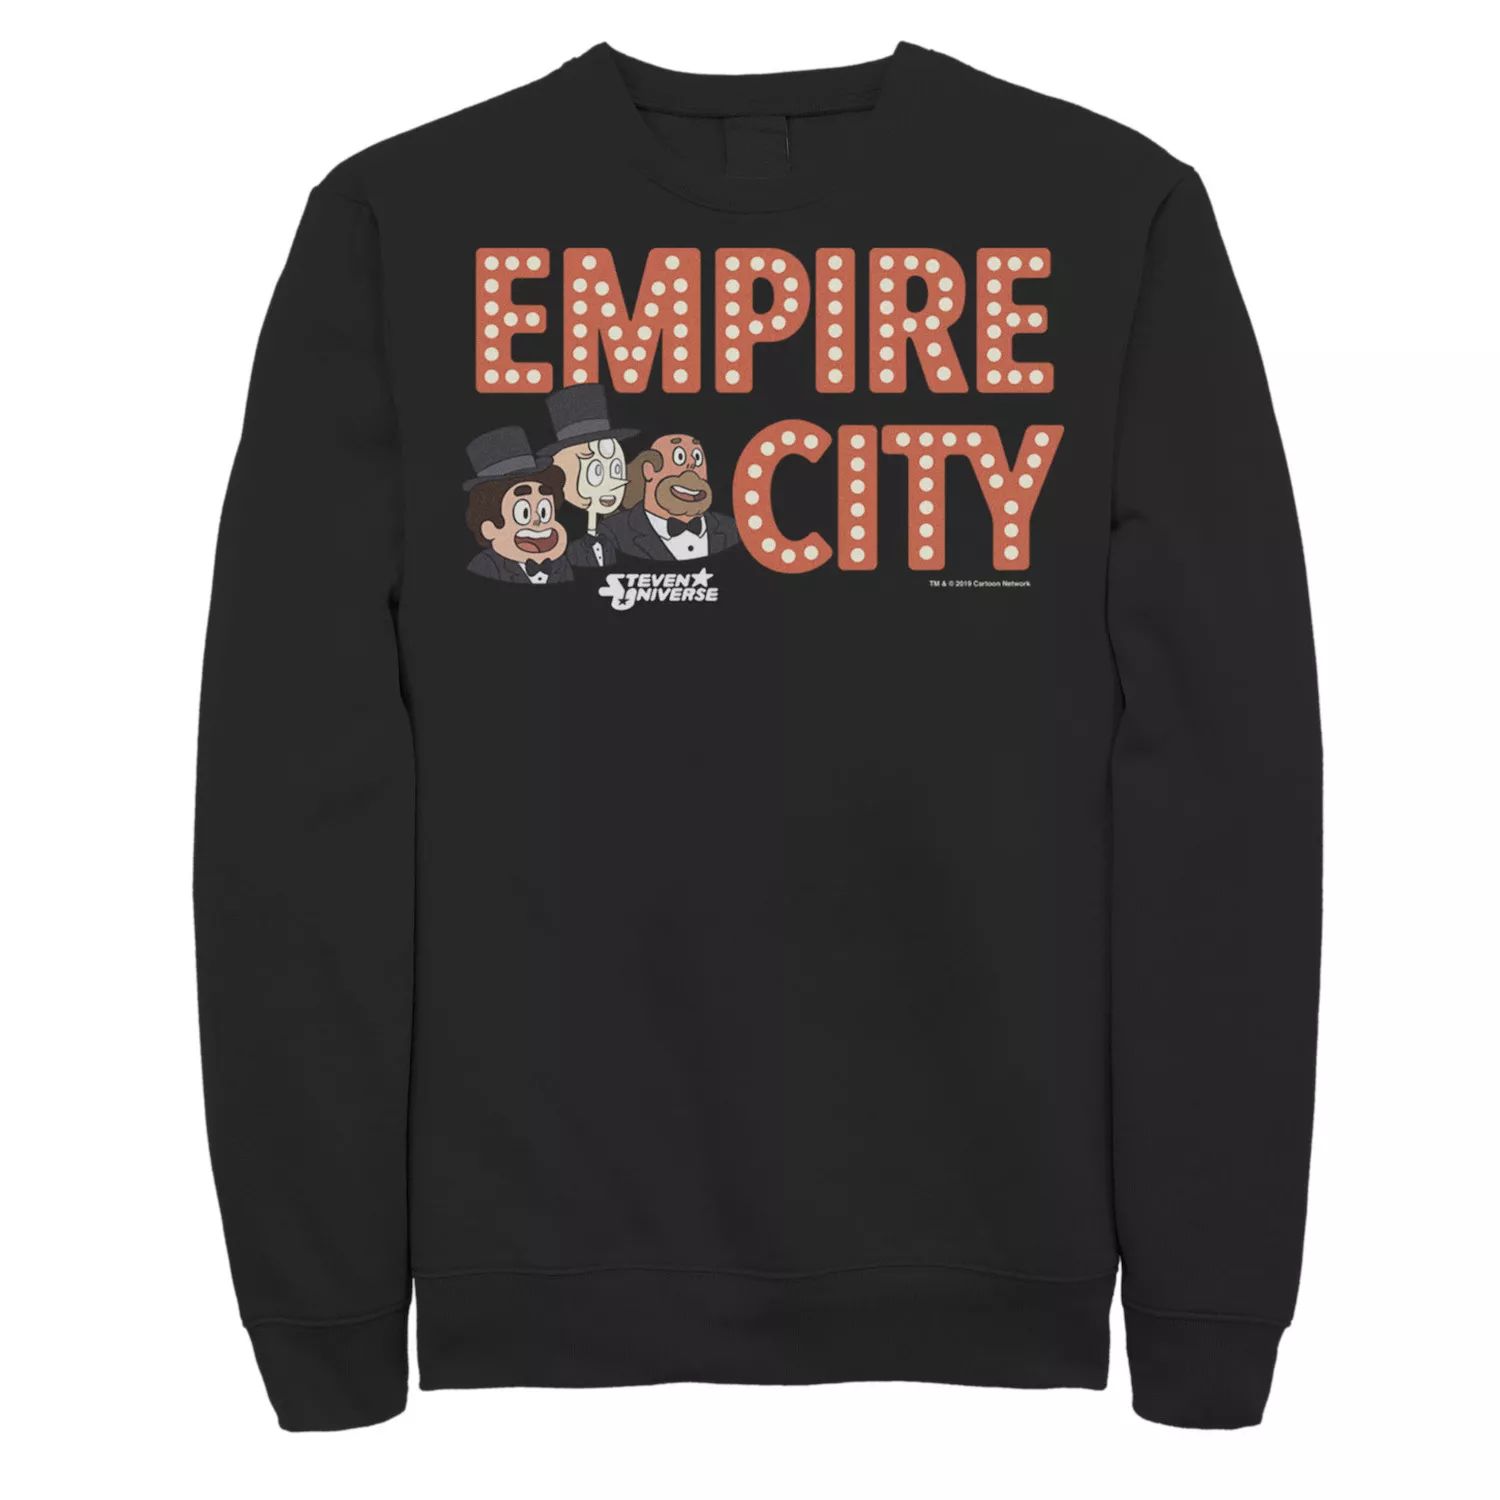 Мужской флисовый пуловер с графическим рисунком CN Steven Universe Empire City Licensed Character